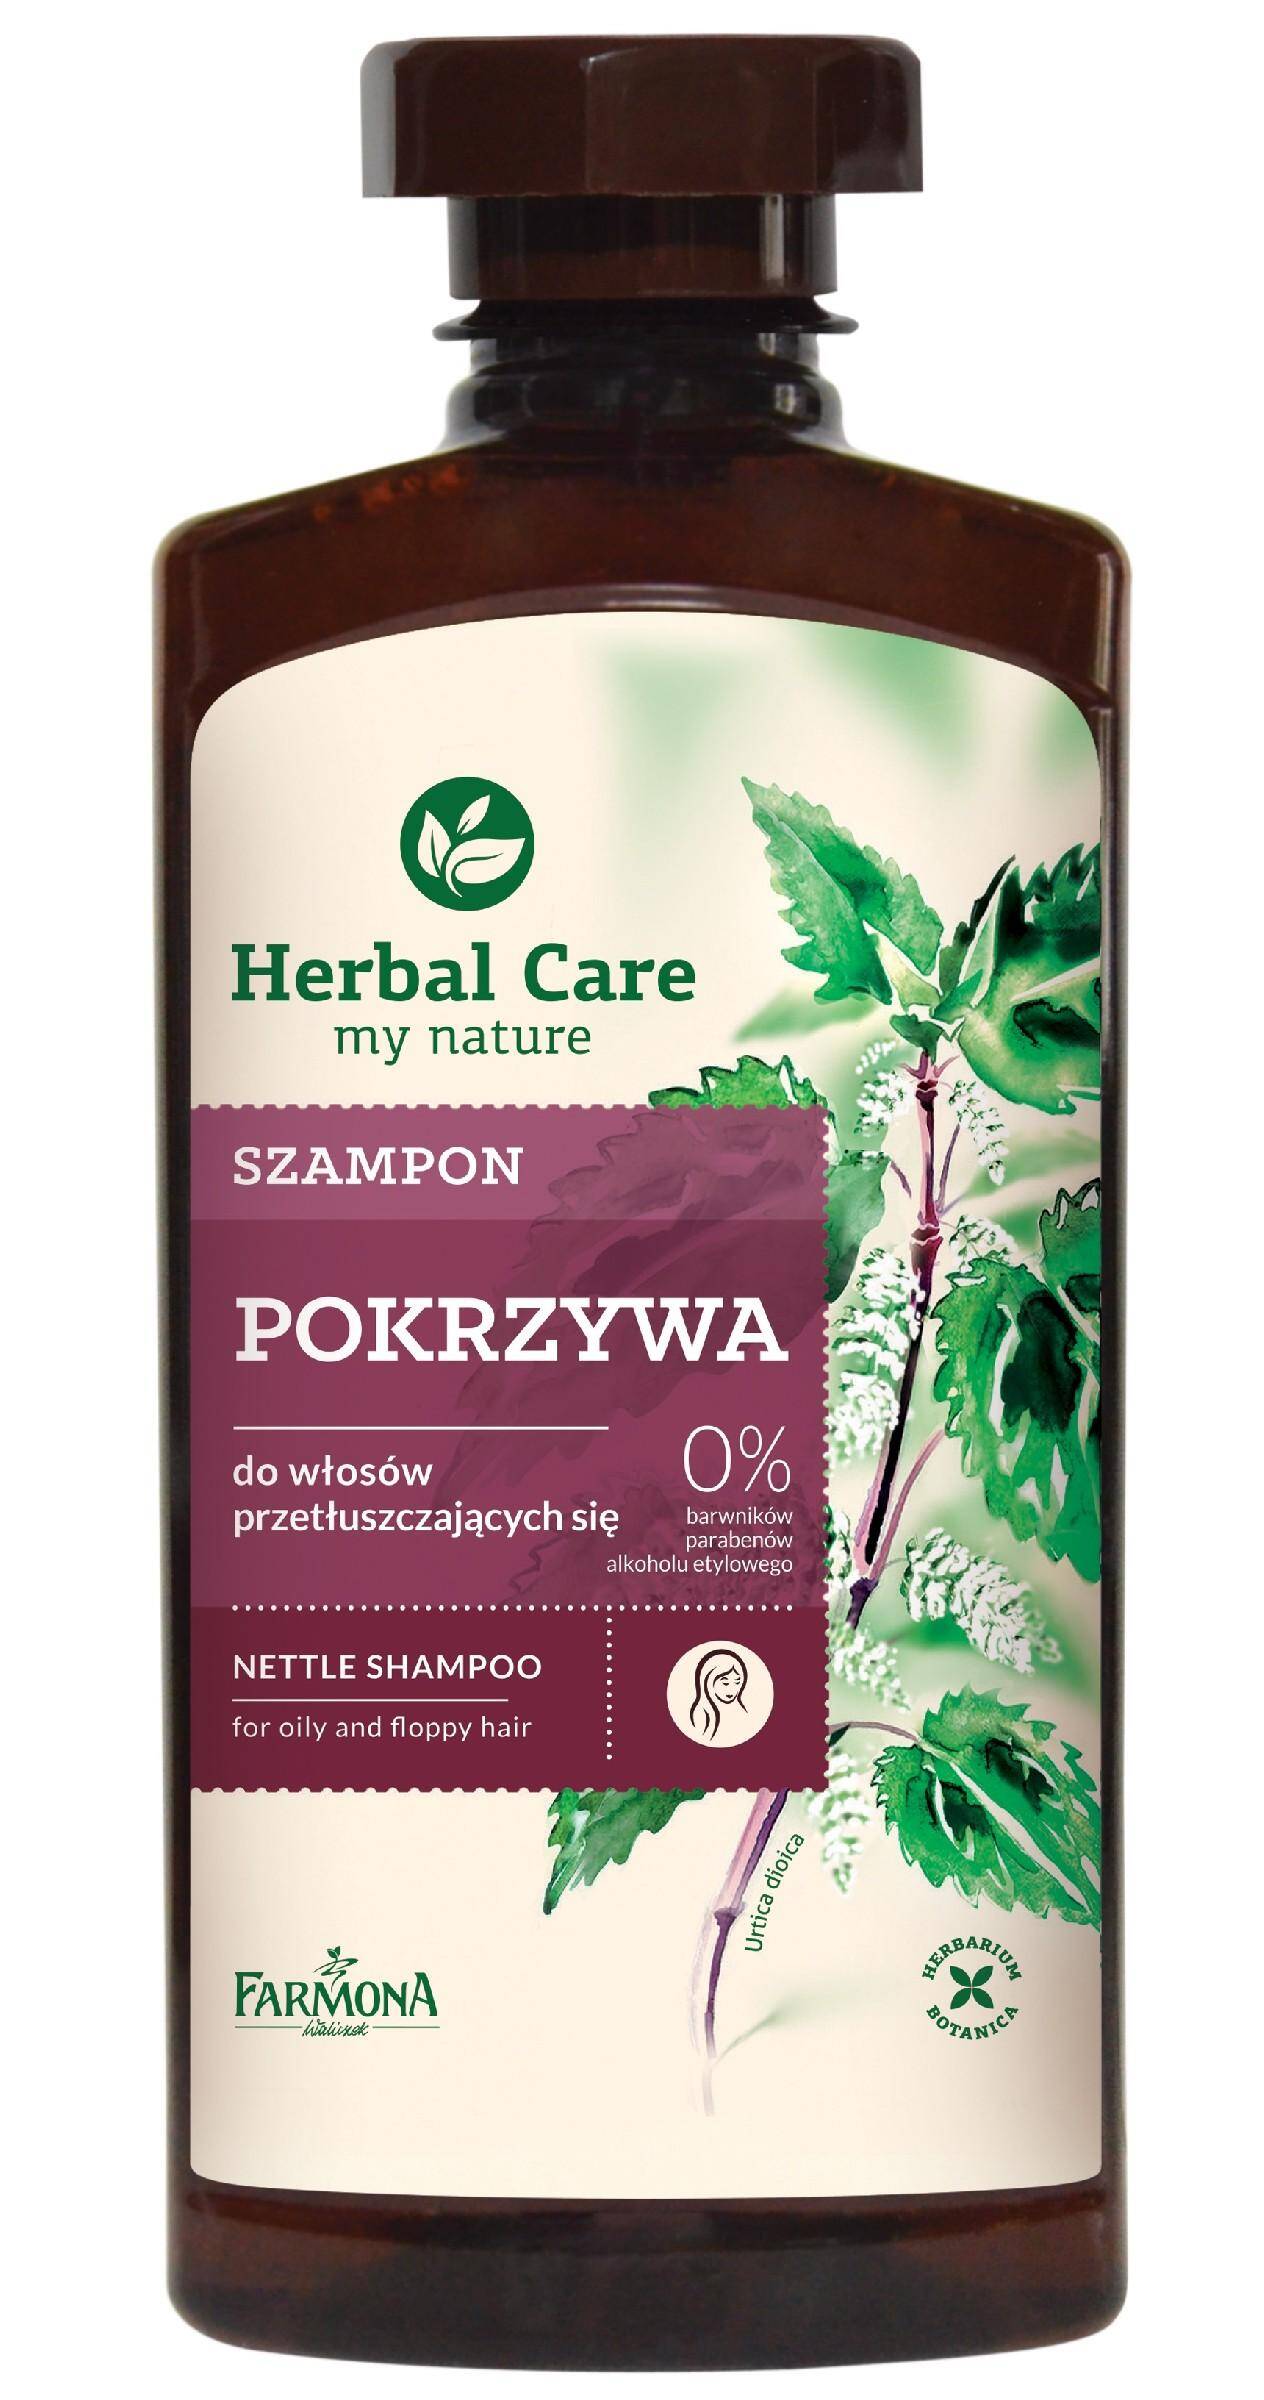 Farmona Herbal Care szampon Pokrzywowy